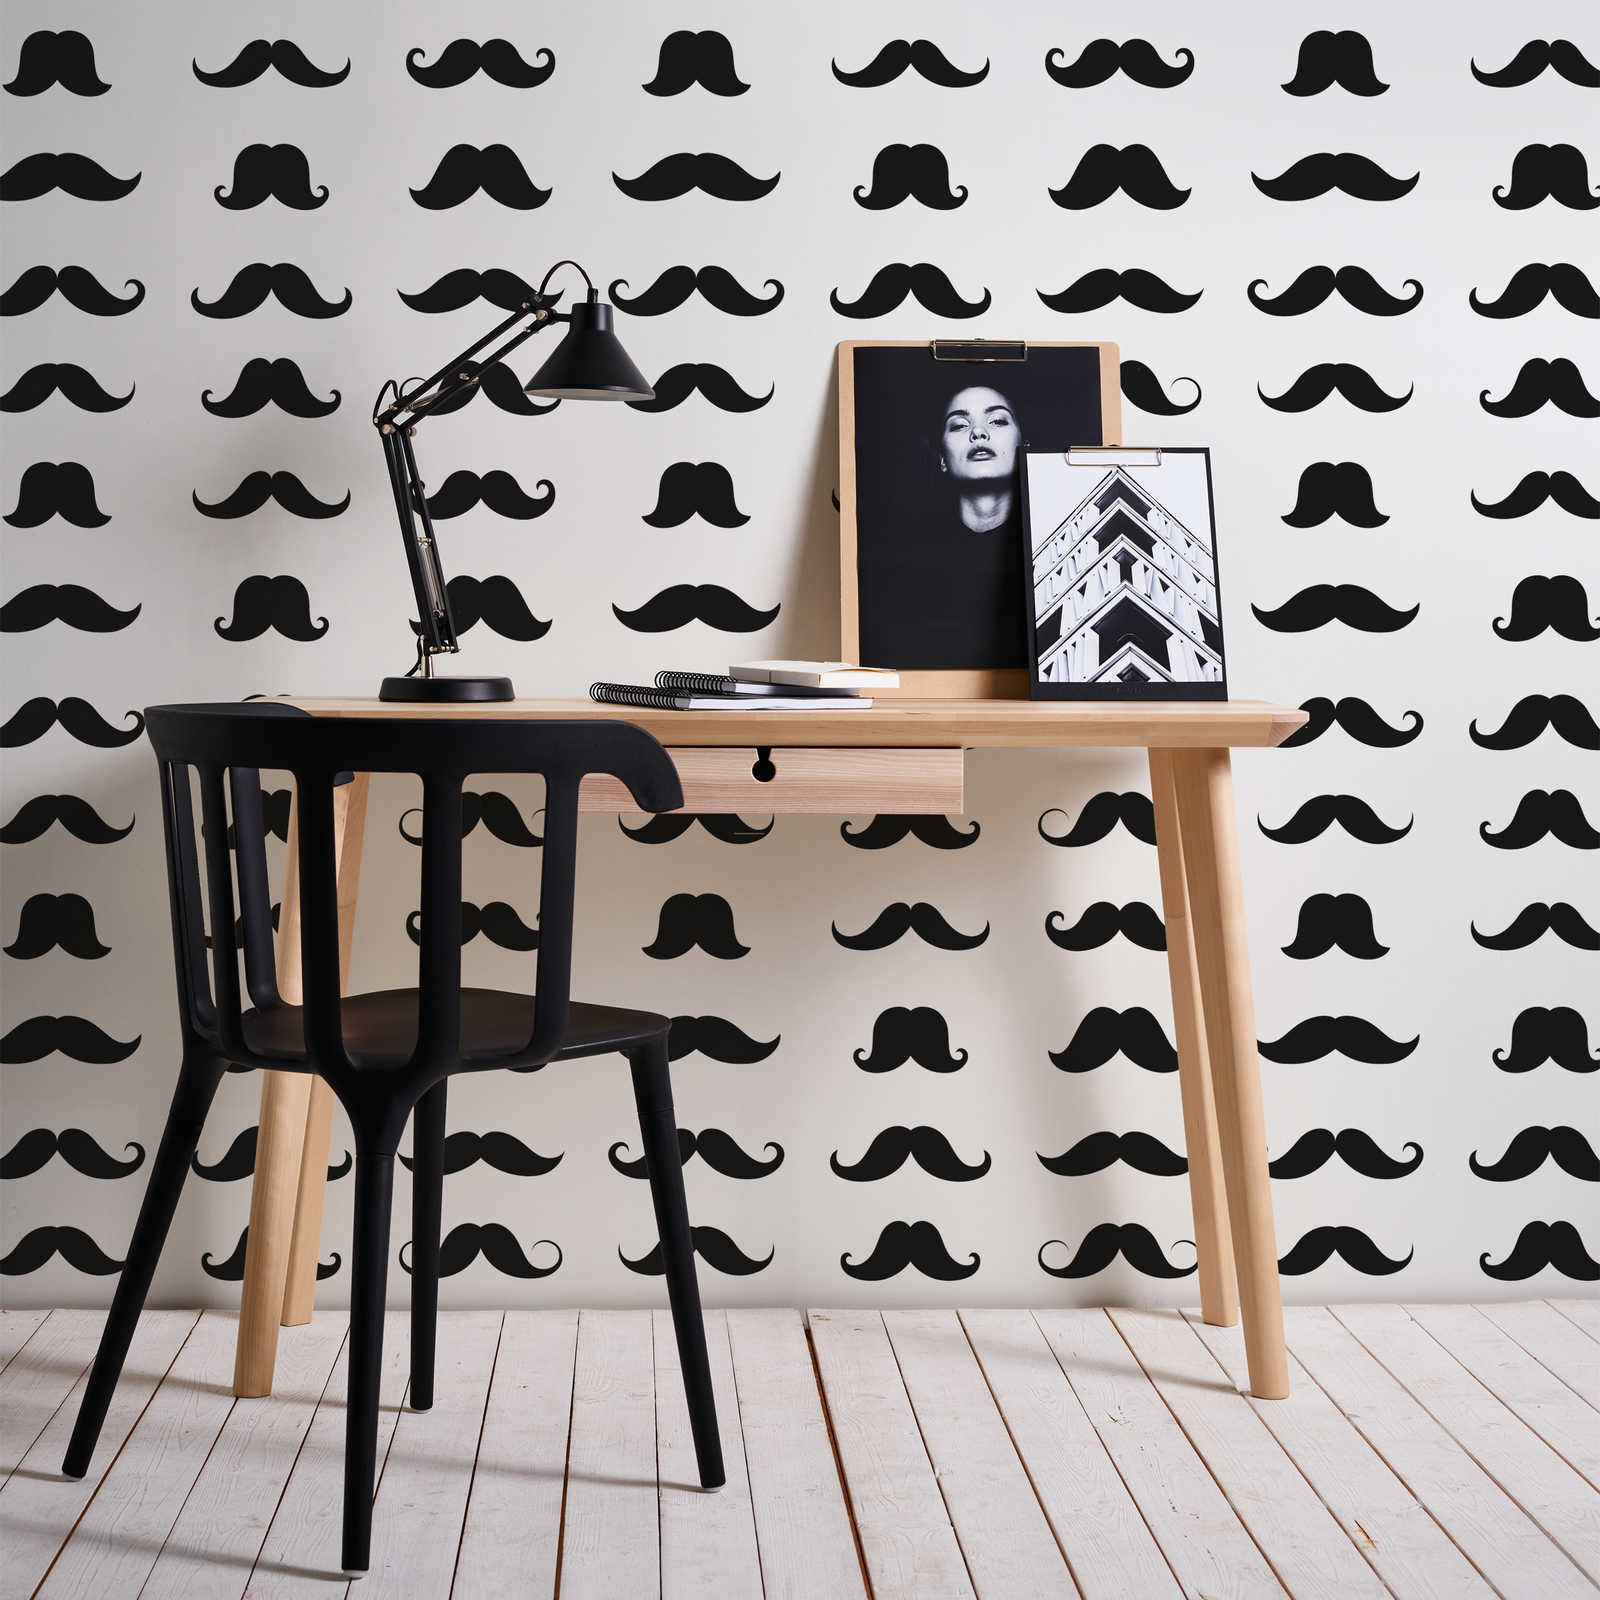 Fototapete Mustache cooles Schnäuzer Motiv – Schwarz-Weiß – Perlmutt Glattvlies
